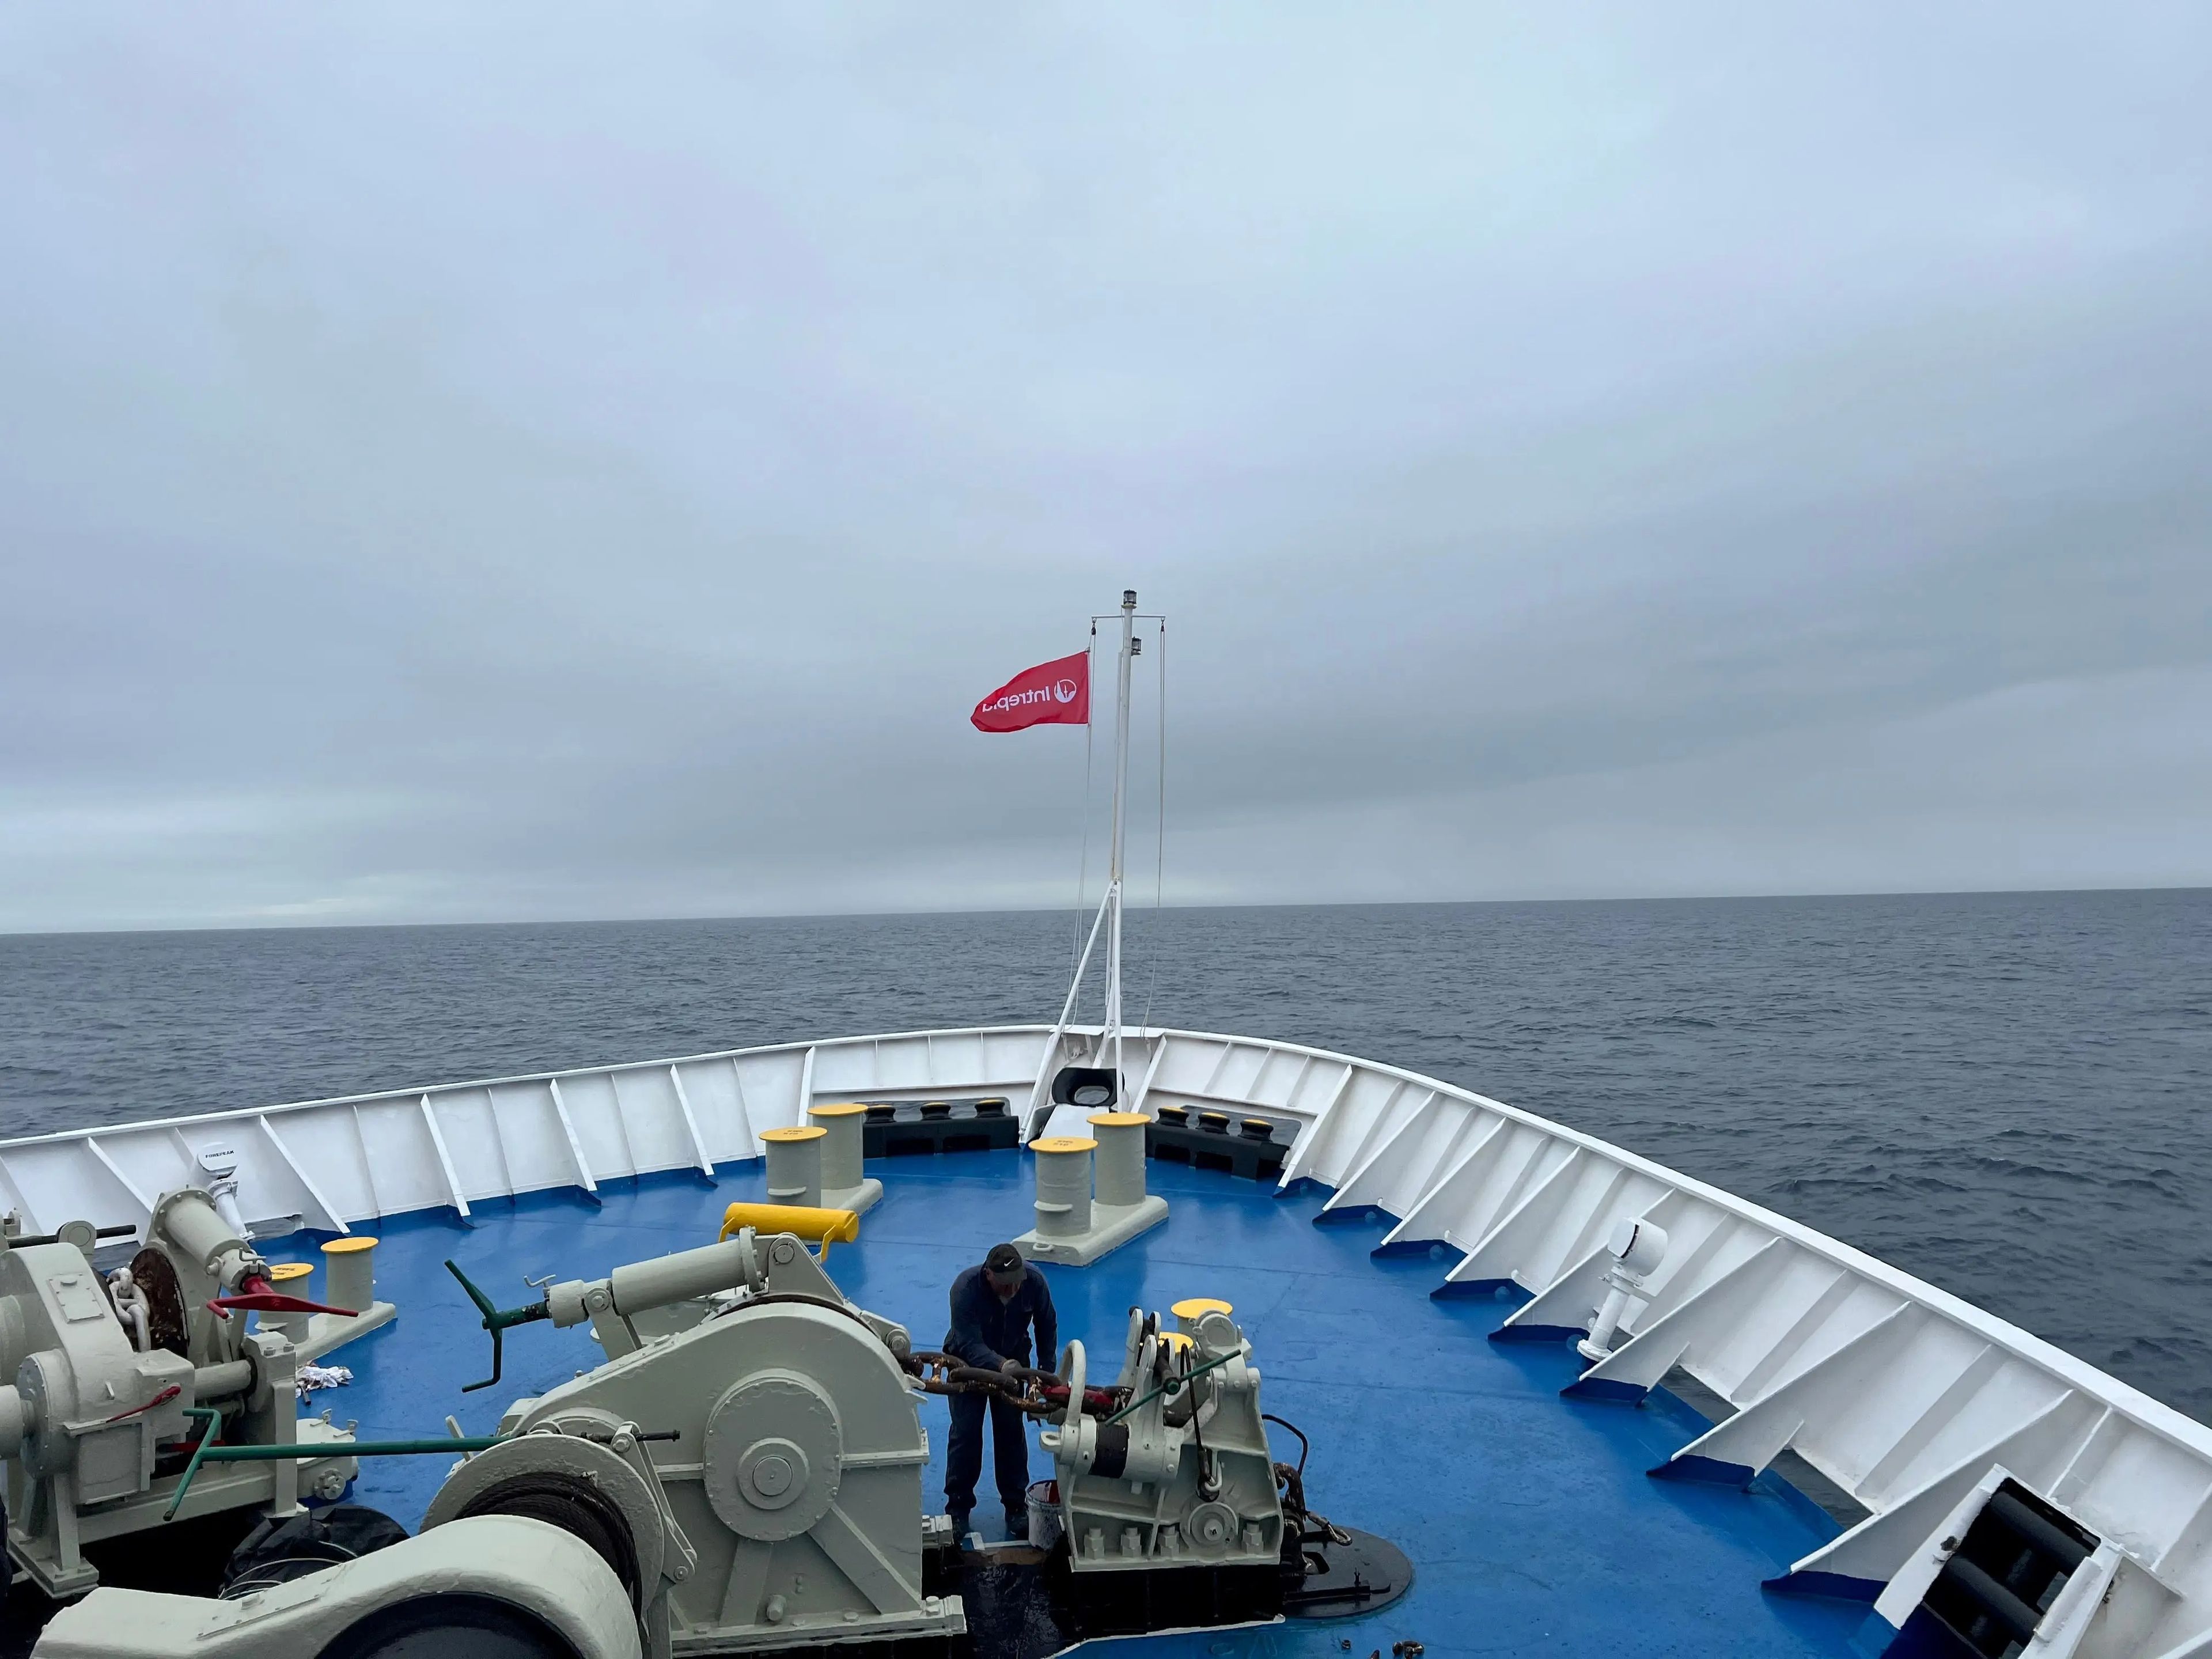 La parte frontal del buque Ocean Endeavor de Intrepid con una bandera de la marca ondeando.